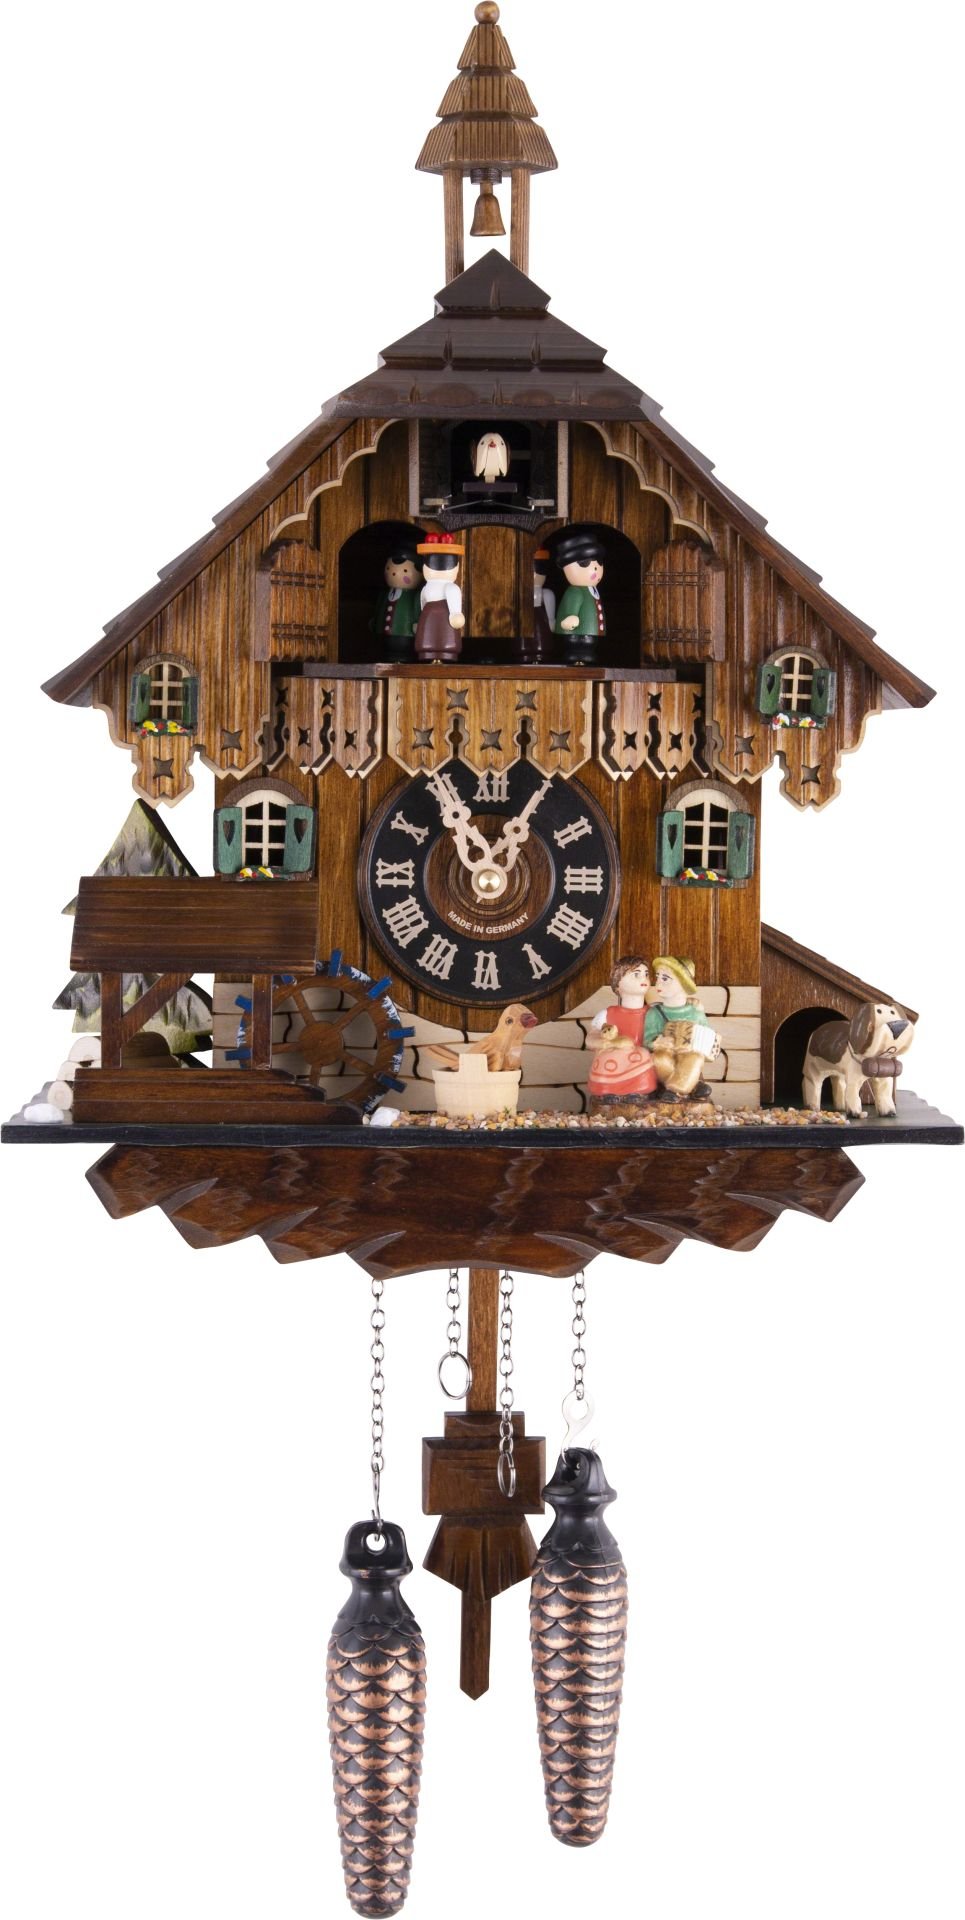 Kuckucksuhr Chalet-Stil Quarz-Uhrwerk 35cm von Engstler